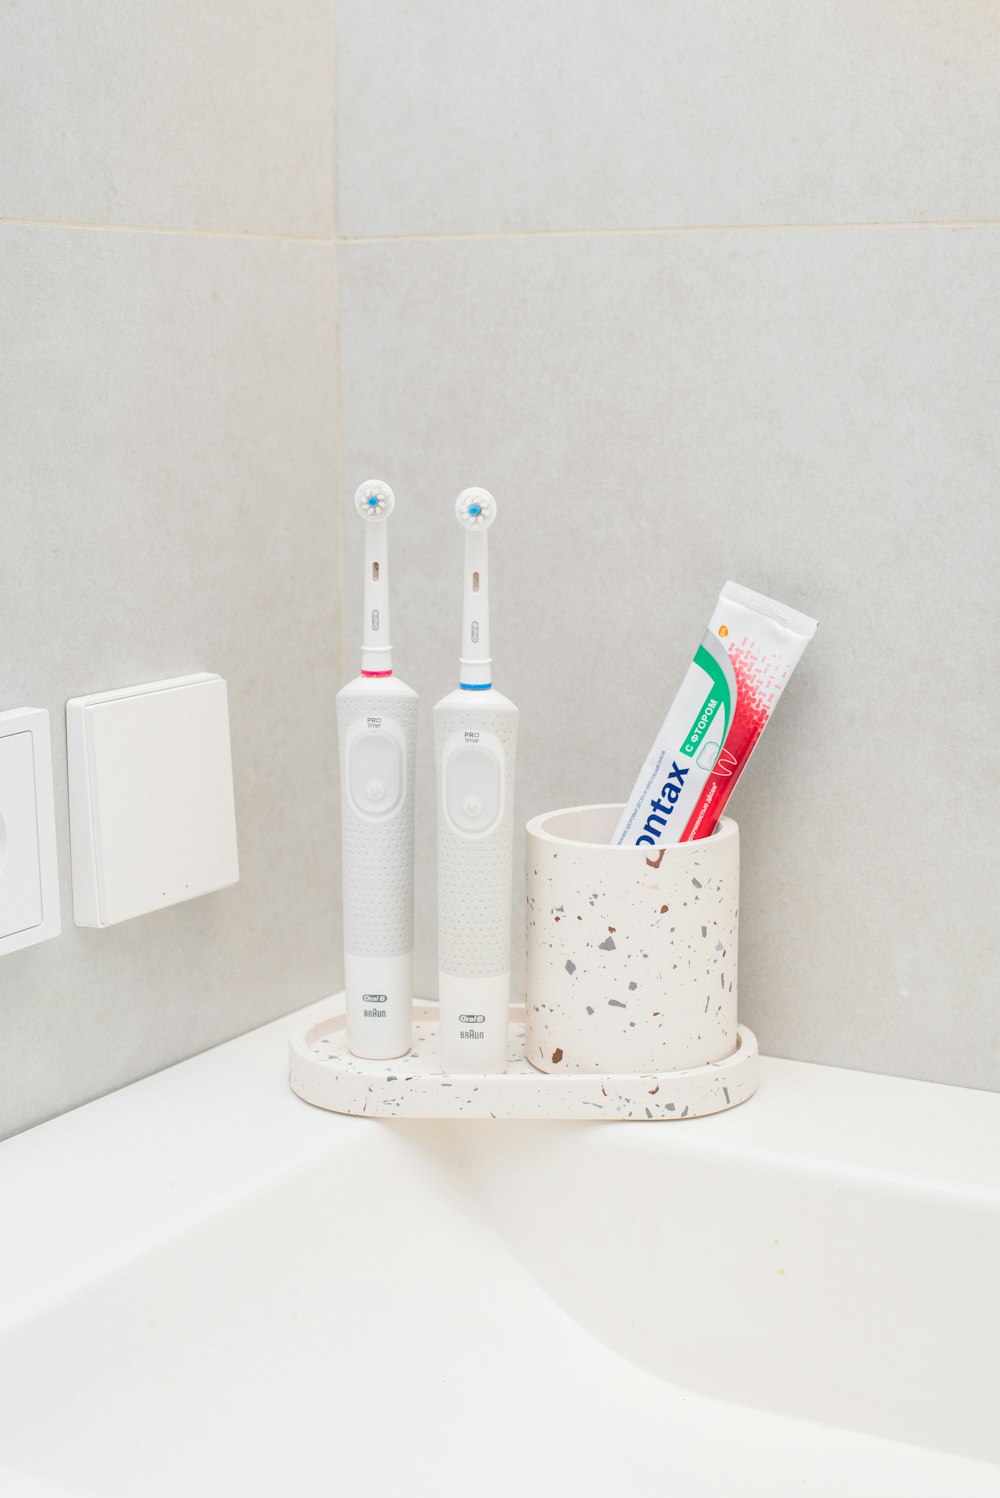 Uno spazzolino da denti, dentifricio e porta dentifricio in un bagno foto –  Immagine gratuita su Unsplash